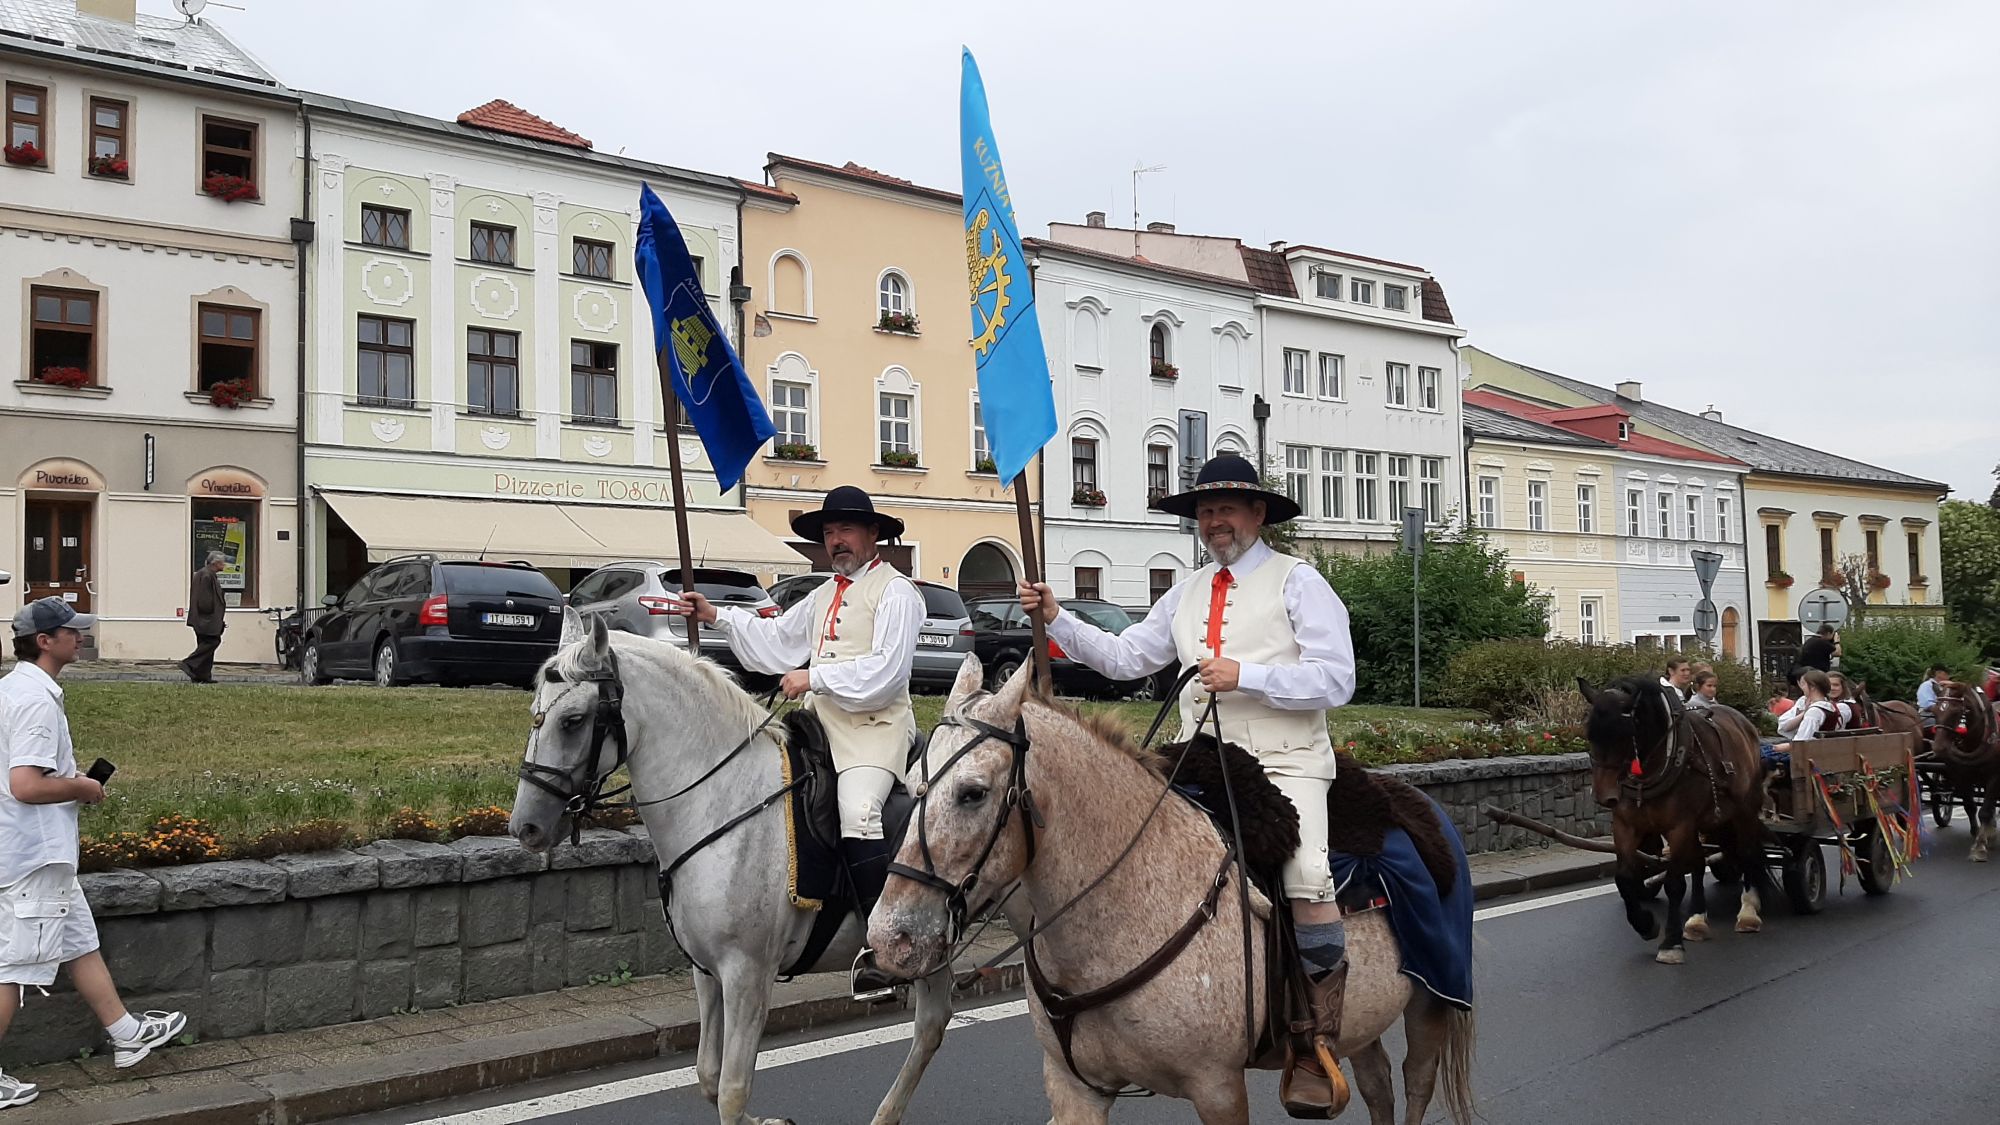 Korowód prowadzony był przez dwóch jeźdźców, którzy w ręku trzymali flagi miasta Odry i Kuźni Raciborskiej